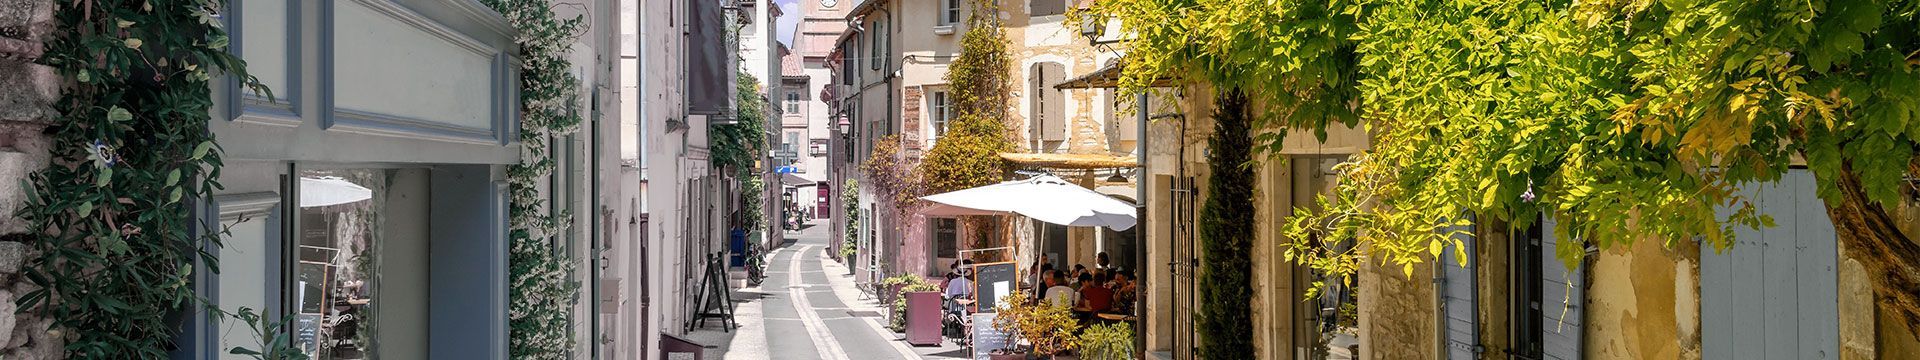 Photographie d'une rue passante de Saint-Rémy-de-Provence